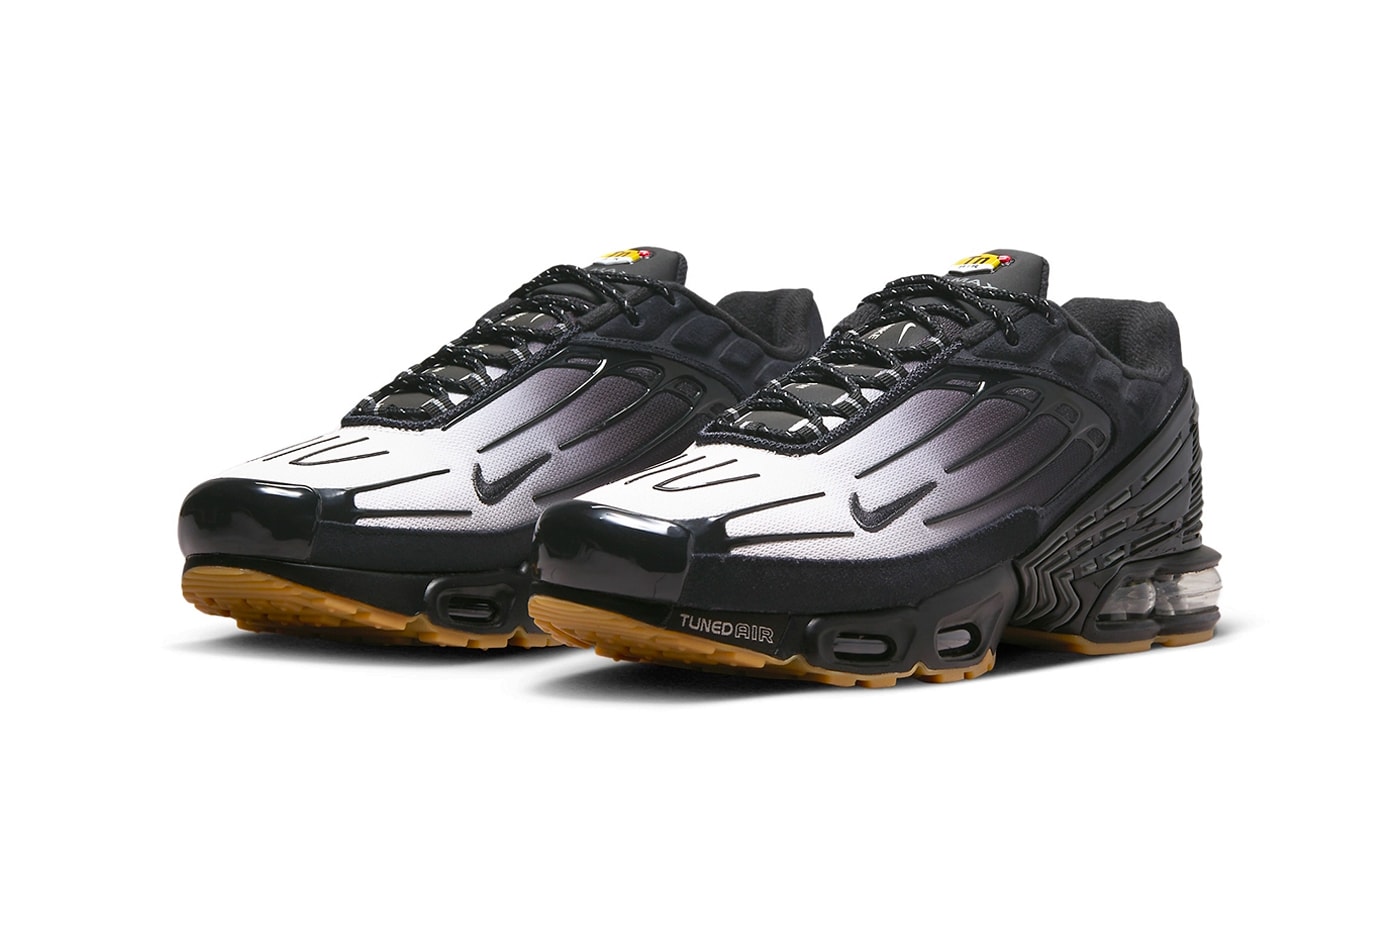 ナイキエアマックスプラス3にモノトーンでまとめ上げた新色モデルがスタンバイ Nike Air Max Plus 3 Surfaces in "Black/Gum" FV0386-001 swoosh technical shoe greyscale upper ombre hues dark black comfort tuned air